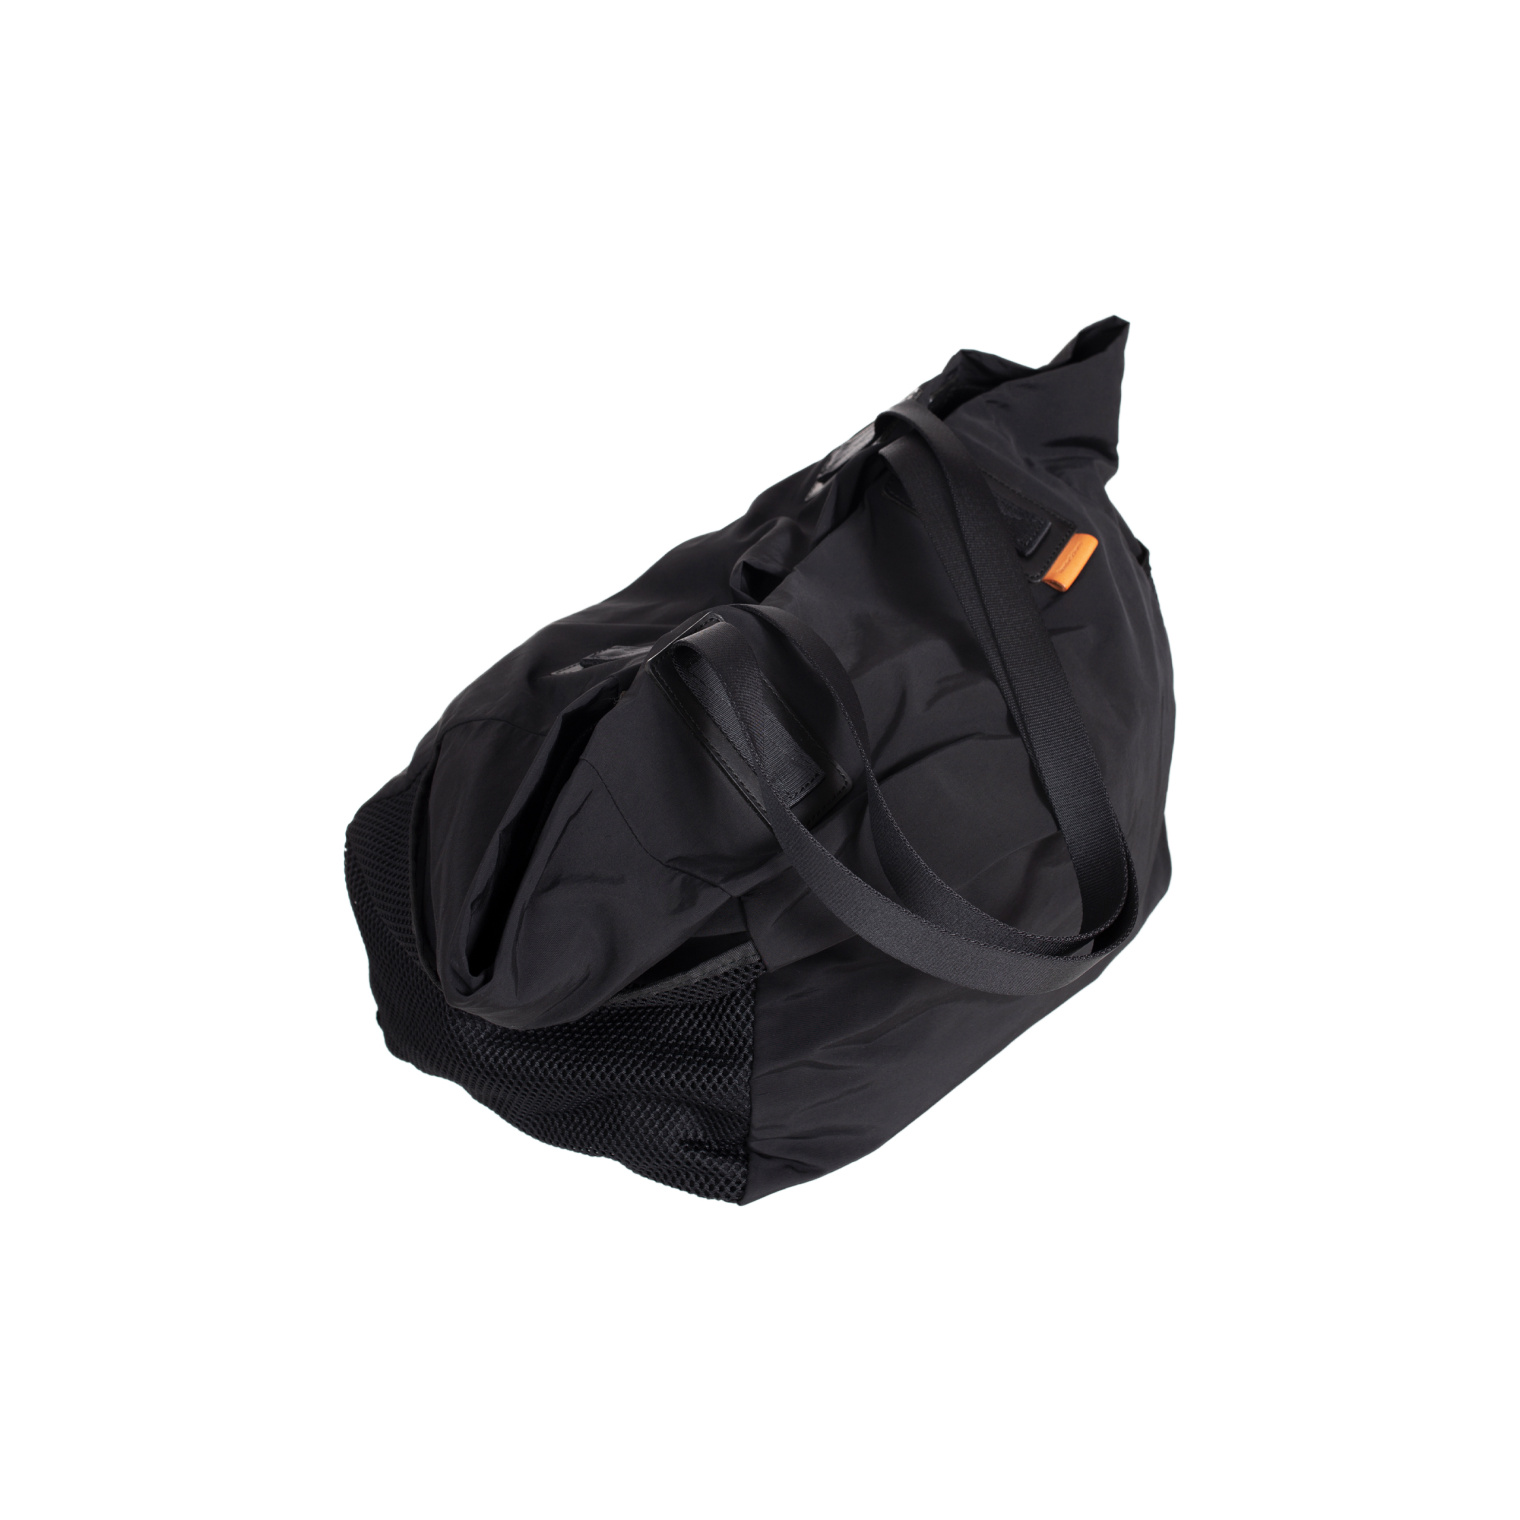 Buy Hender Scheme men black drawstring tote bag for €291 online on 